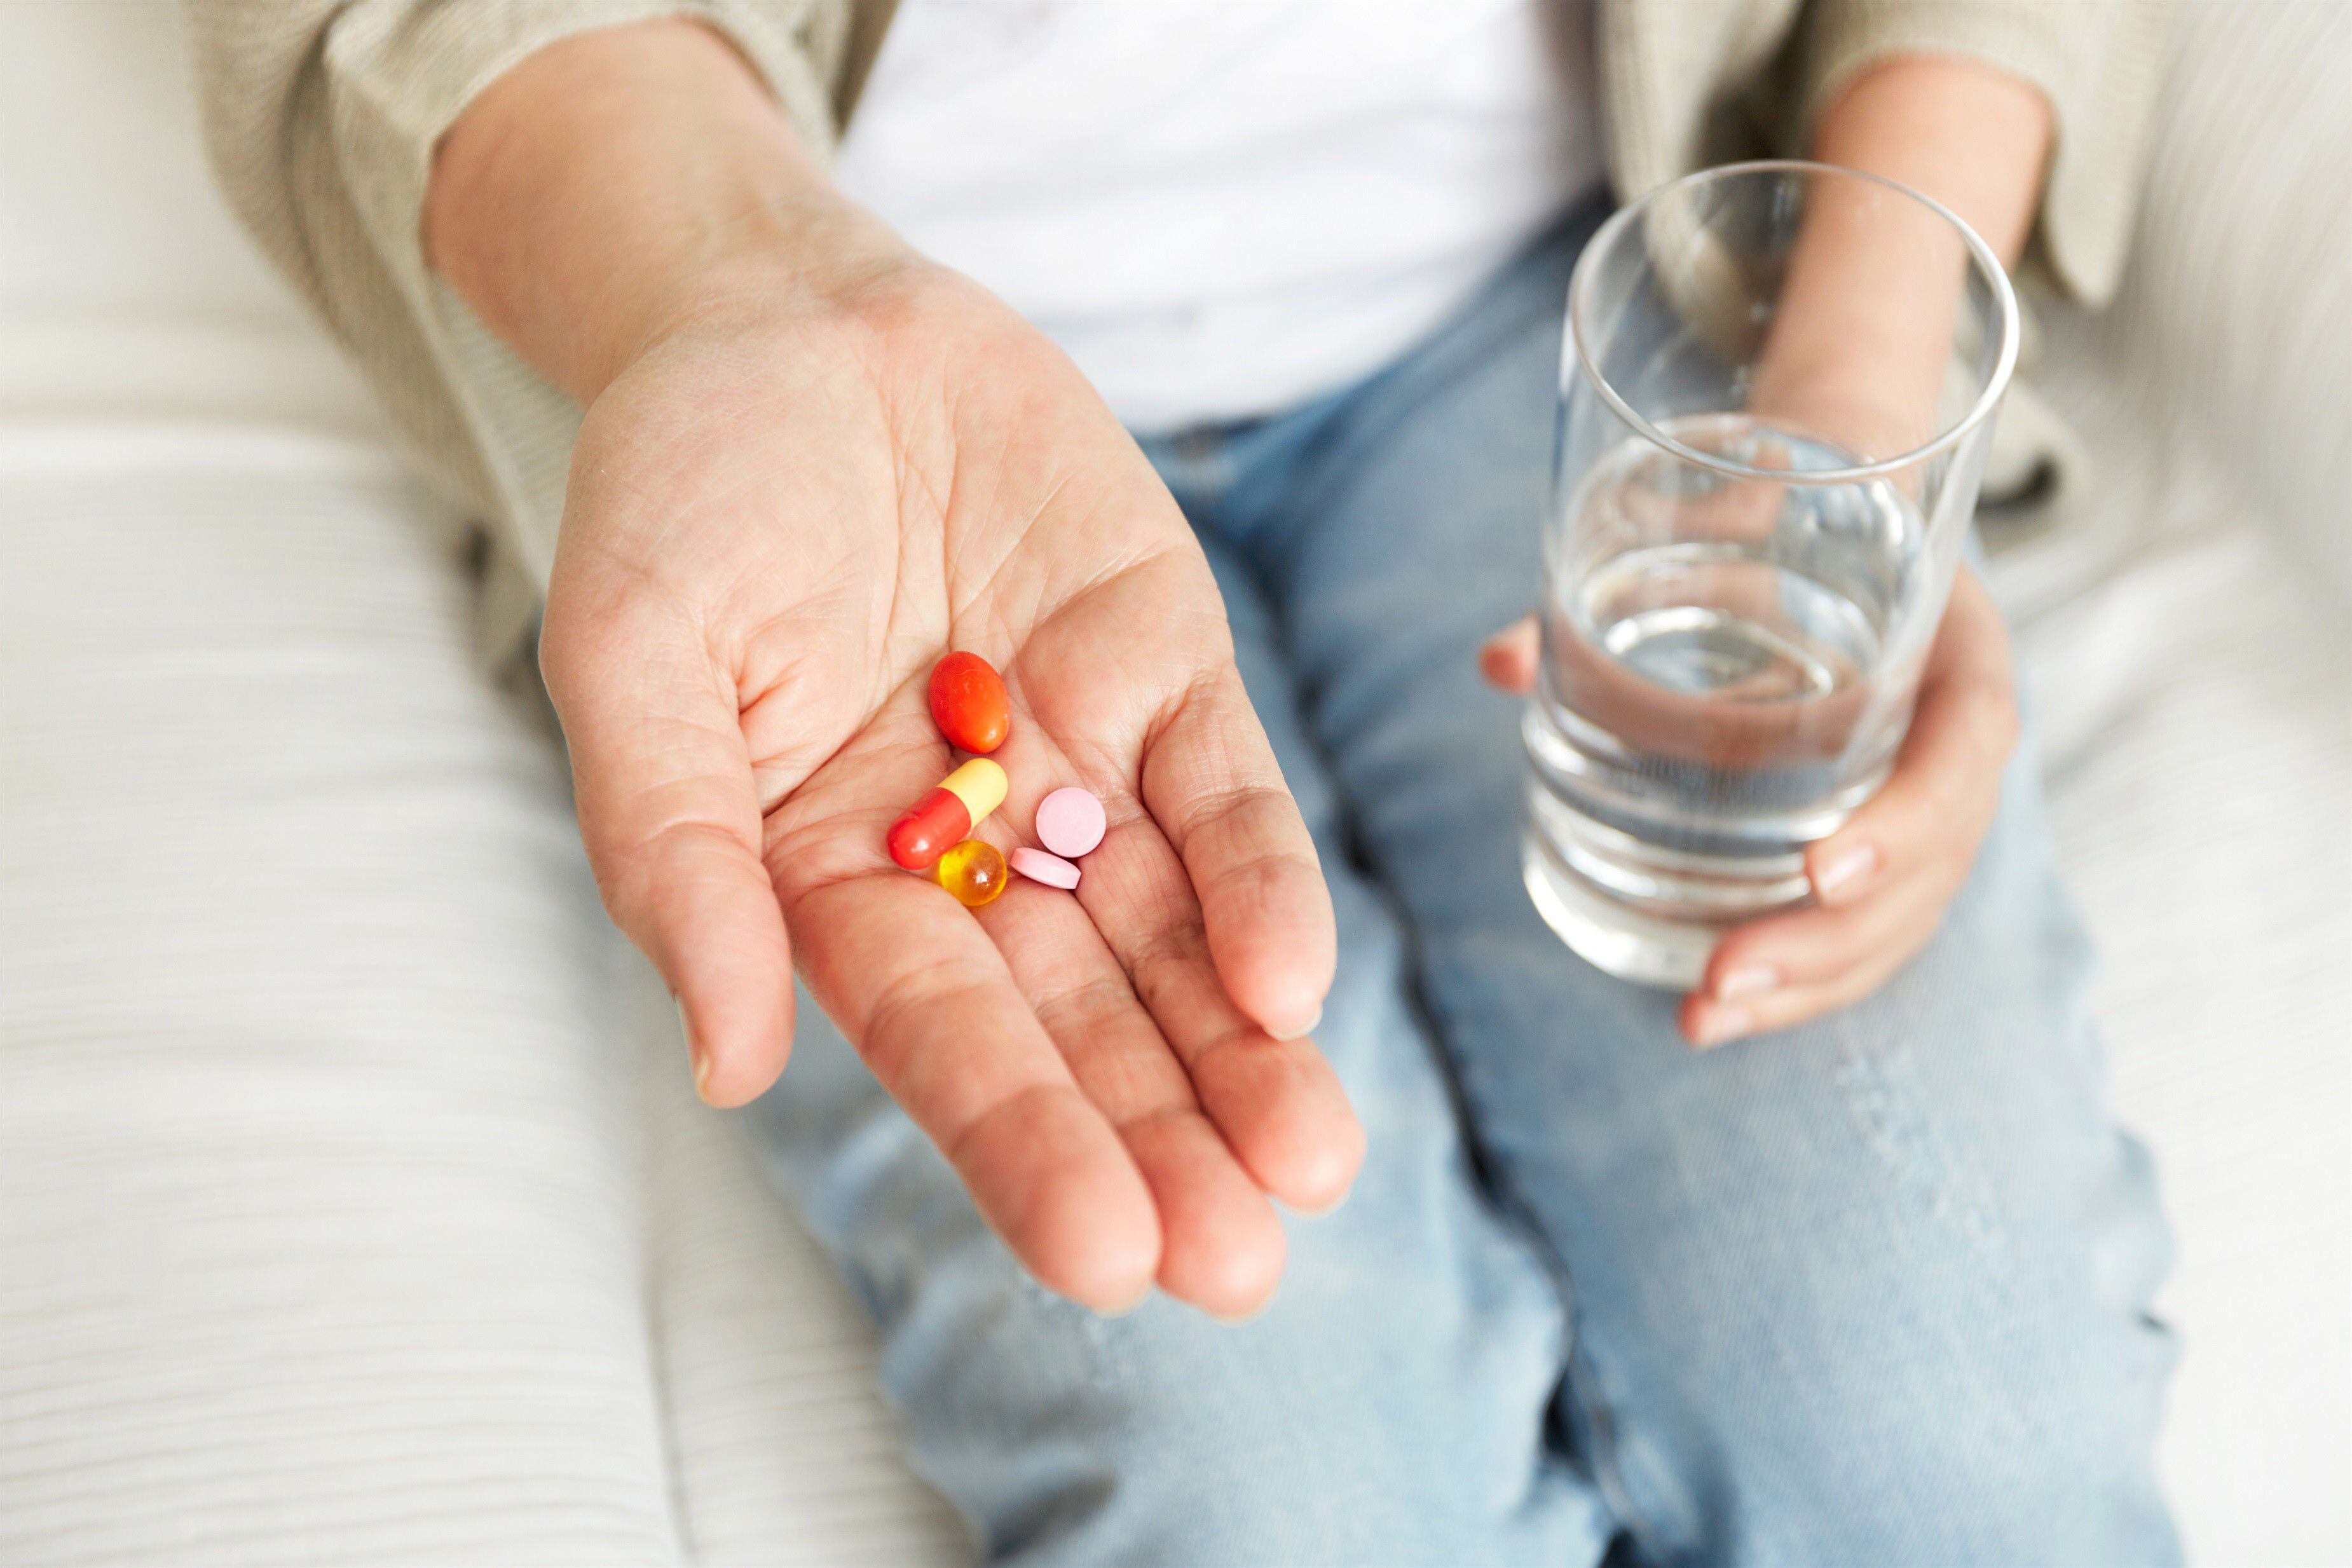 mujer tomó ibuprofeno para aliviar sus cólicos menstruales y terminó en coma ¿qué sucedió?